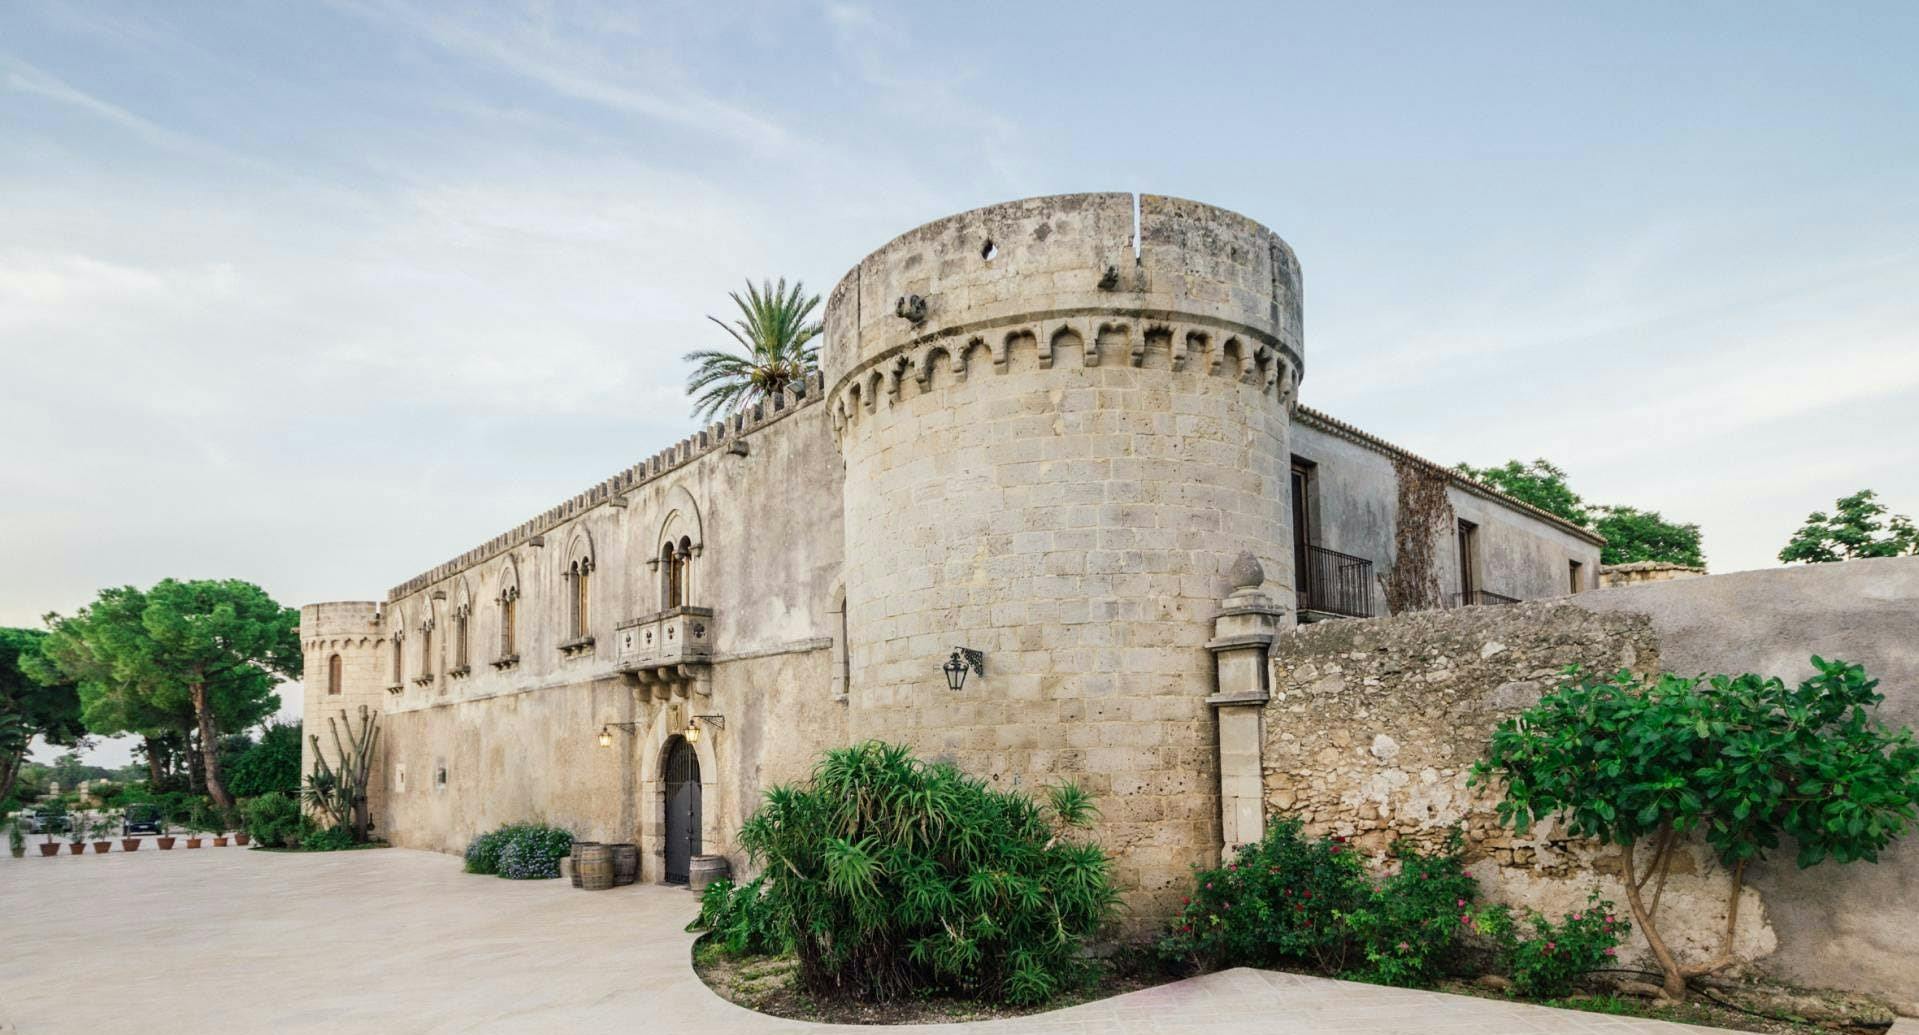 Degustazione di vini siciliani in un castello e giardino storico vicino a Siracusa